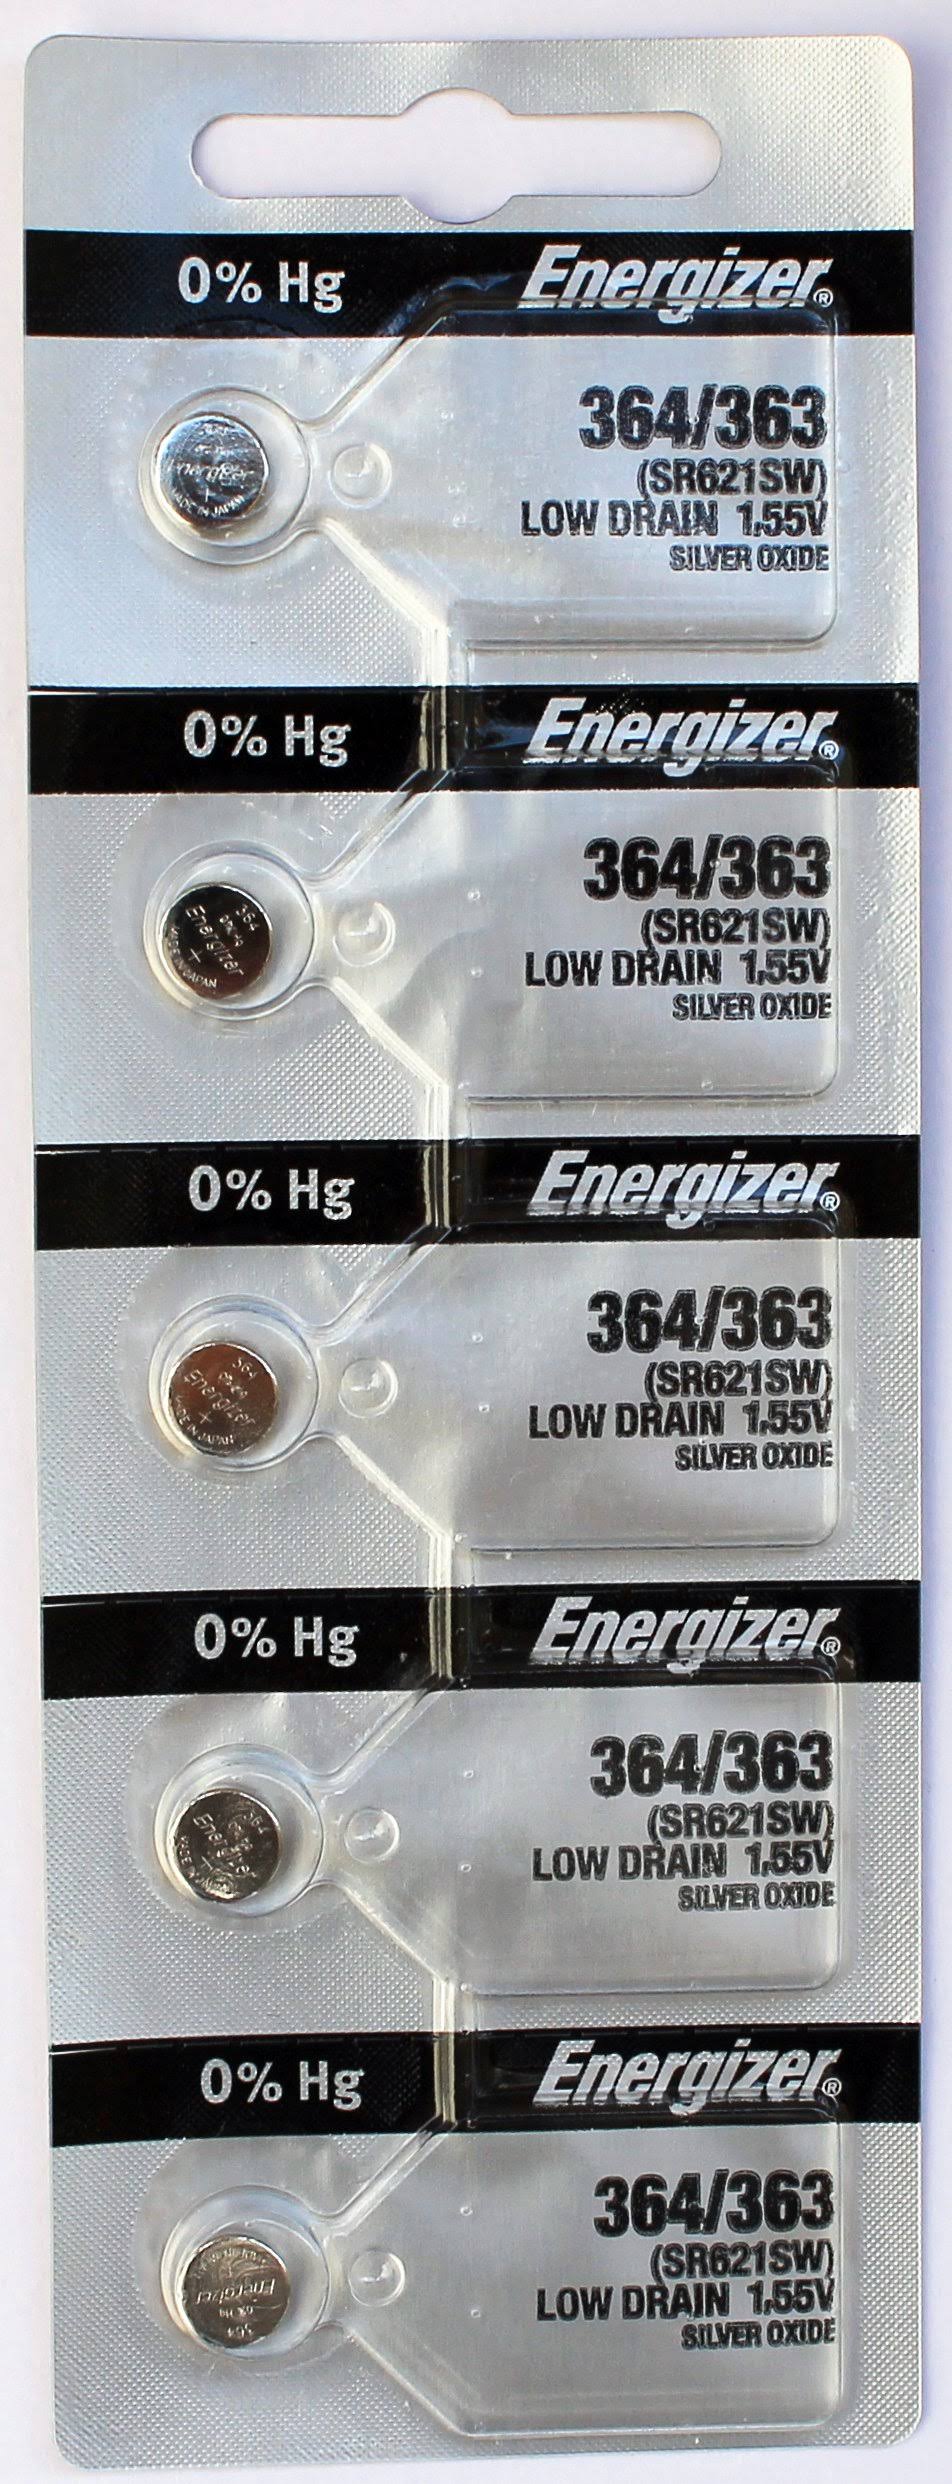 Energizer 364/363 Silver Oxide Coin Cell Batteries 1.55v SR621SW - Default Title